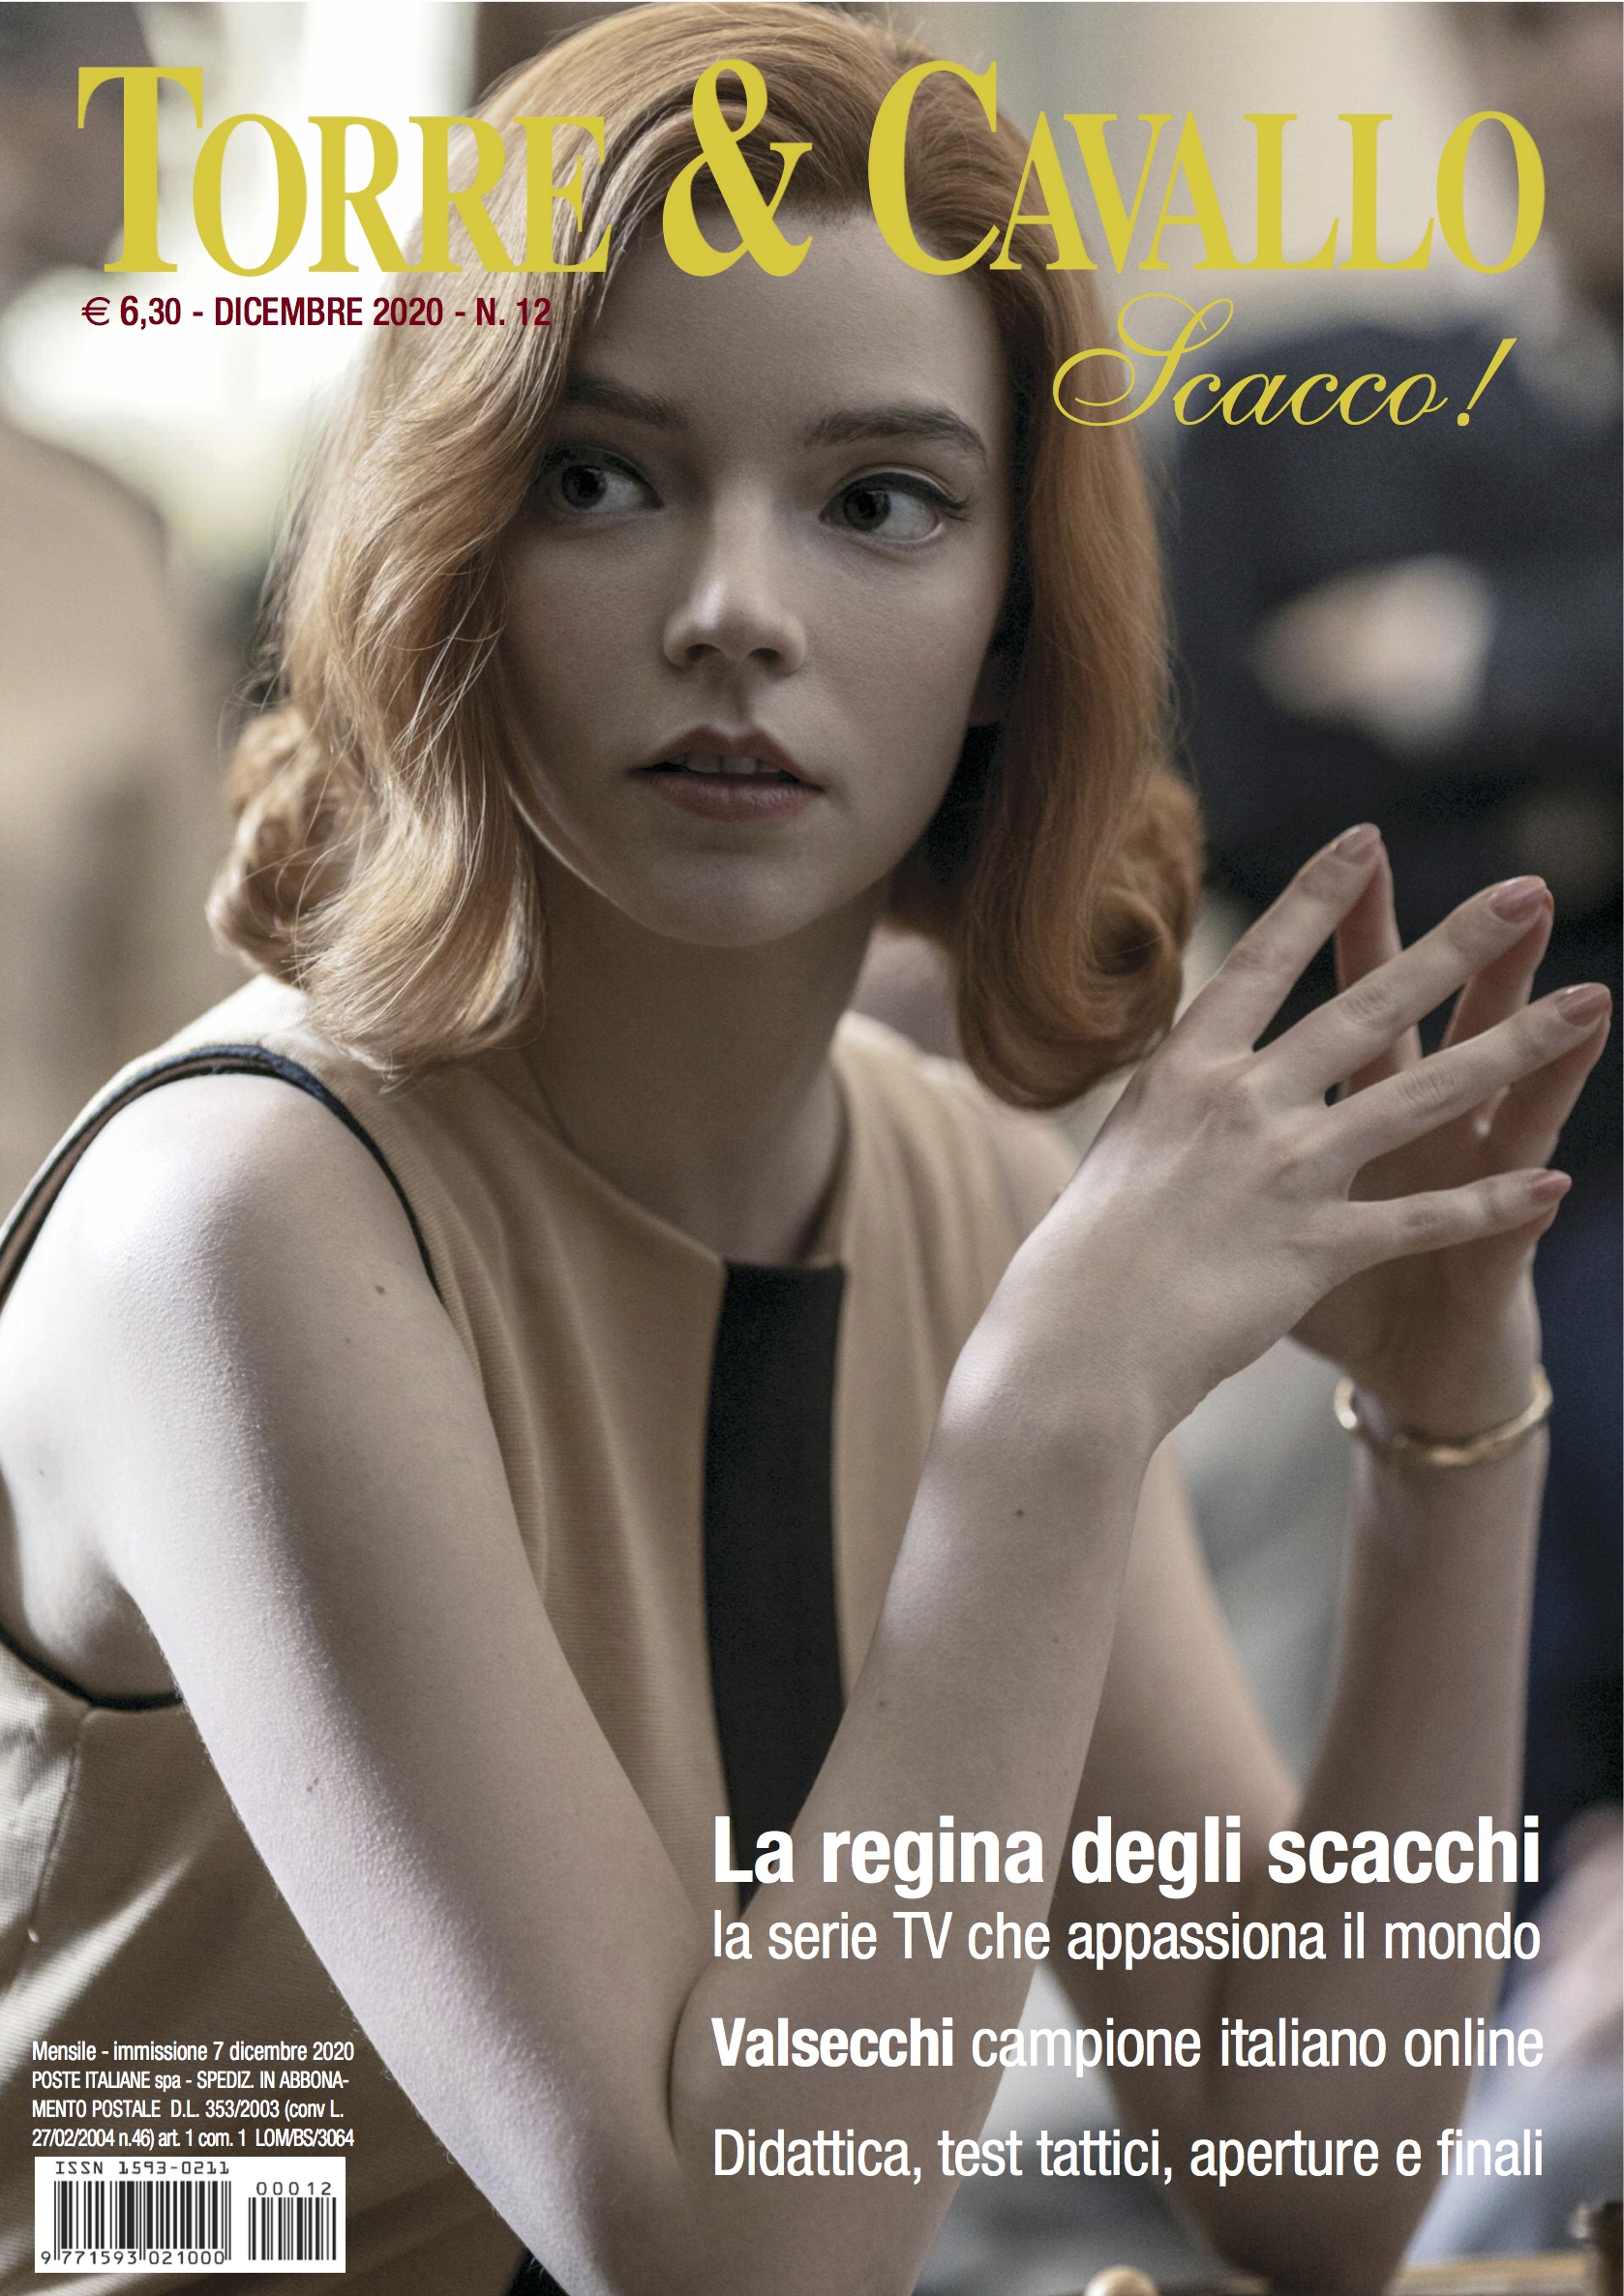 La copertina del numero di dicembre di Torre e Cavallo, Scacco!